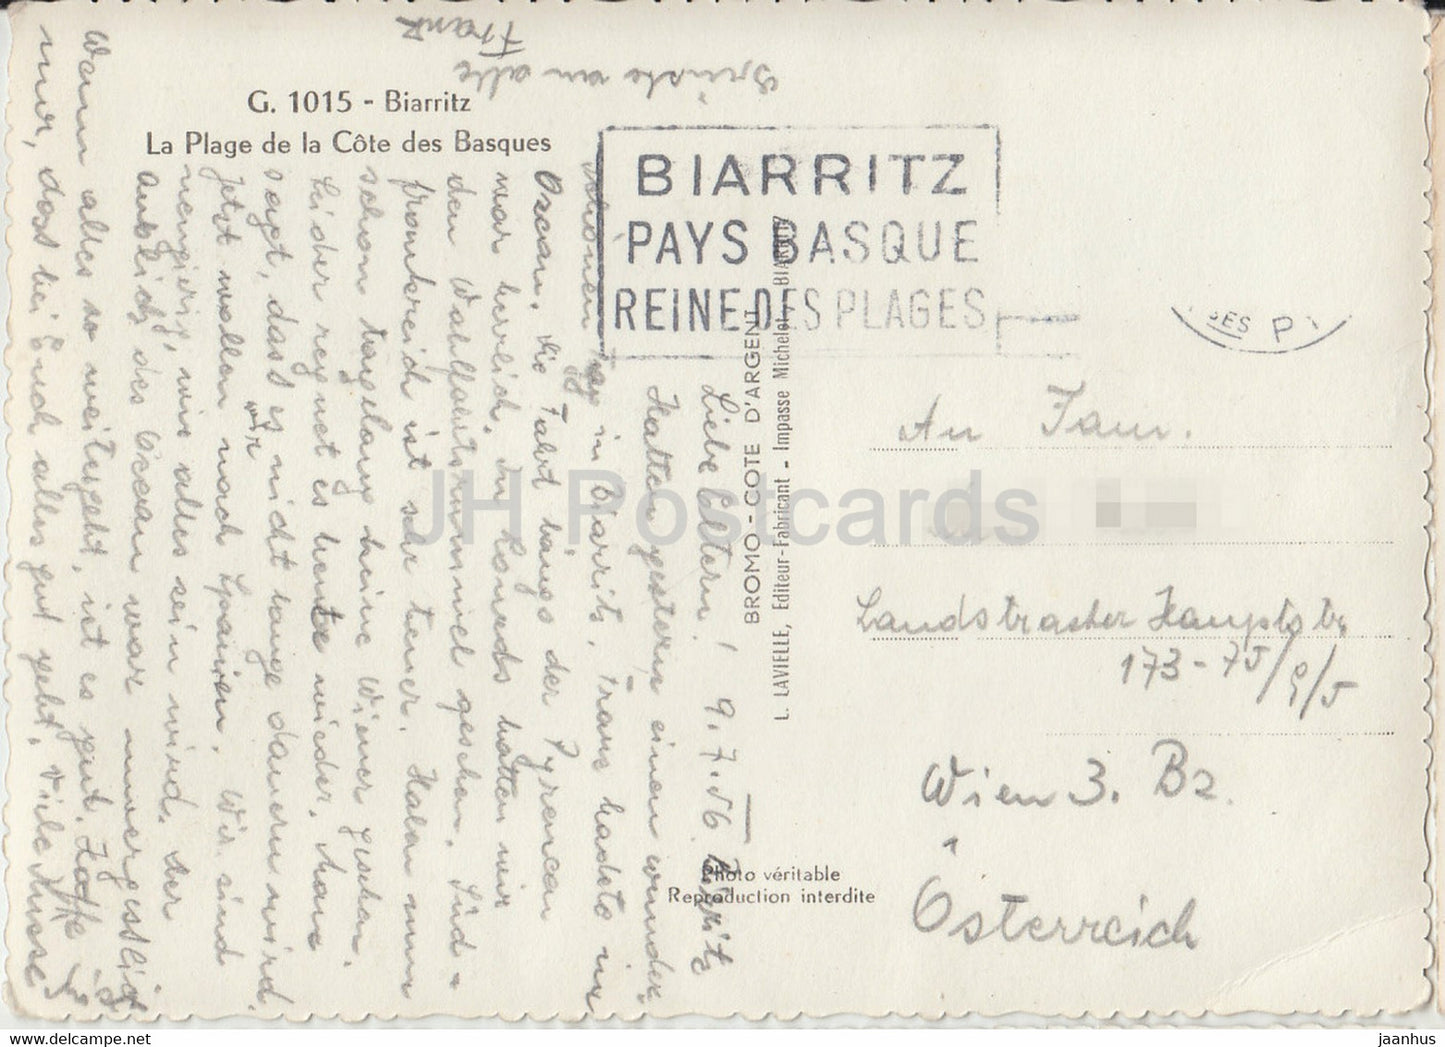 Biarritz - La Plage de la Cote des Basques - old postcard - 1956 - France - used